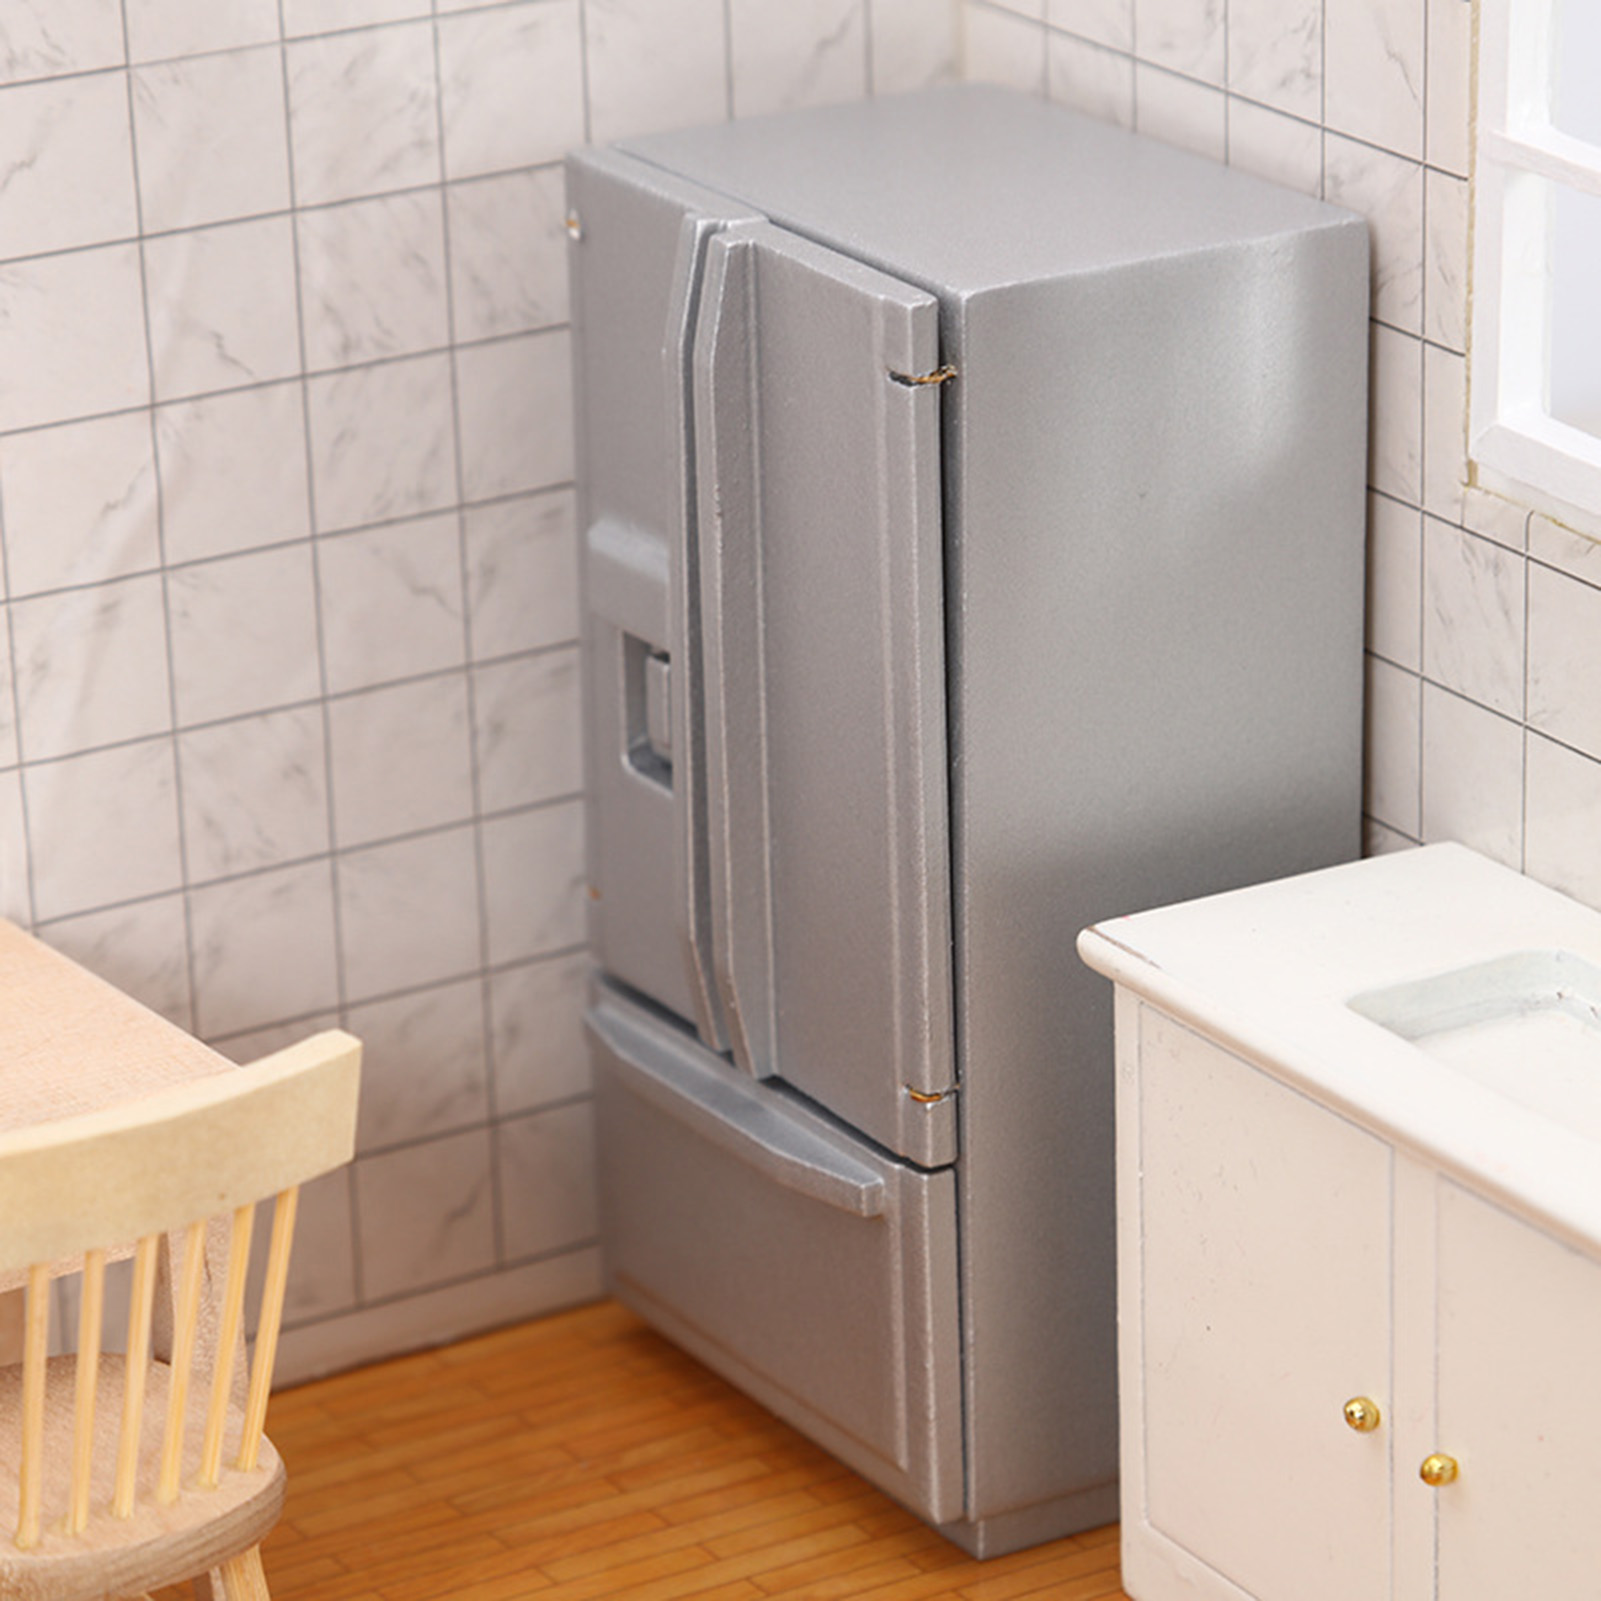 Skindy Mini Refrigerator - Double Door Design DIY Accessories, 1